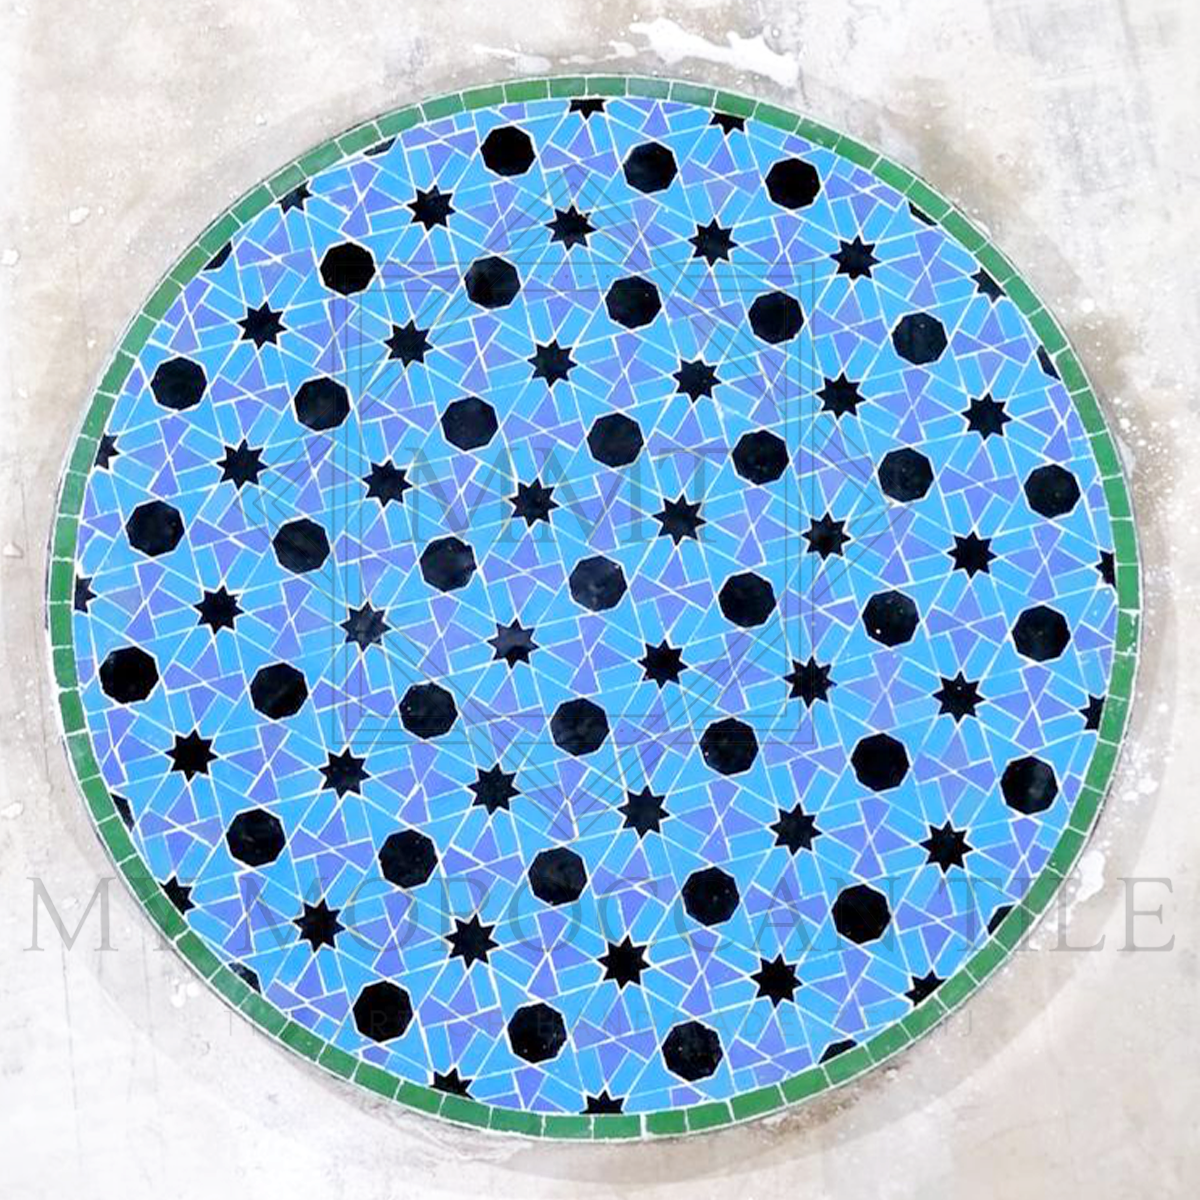 Mesa de mosaico marroquí hecha a mano 2108-07